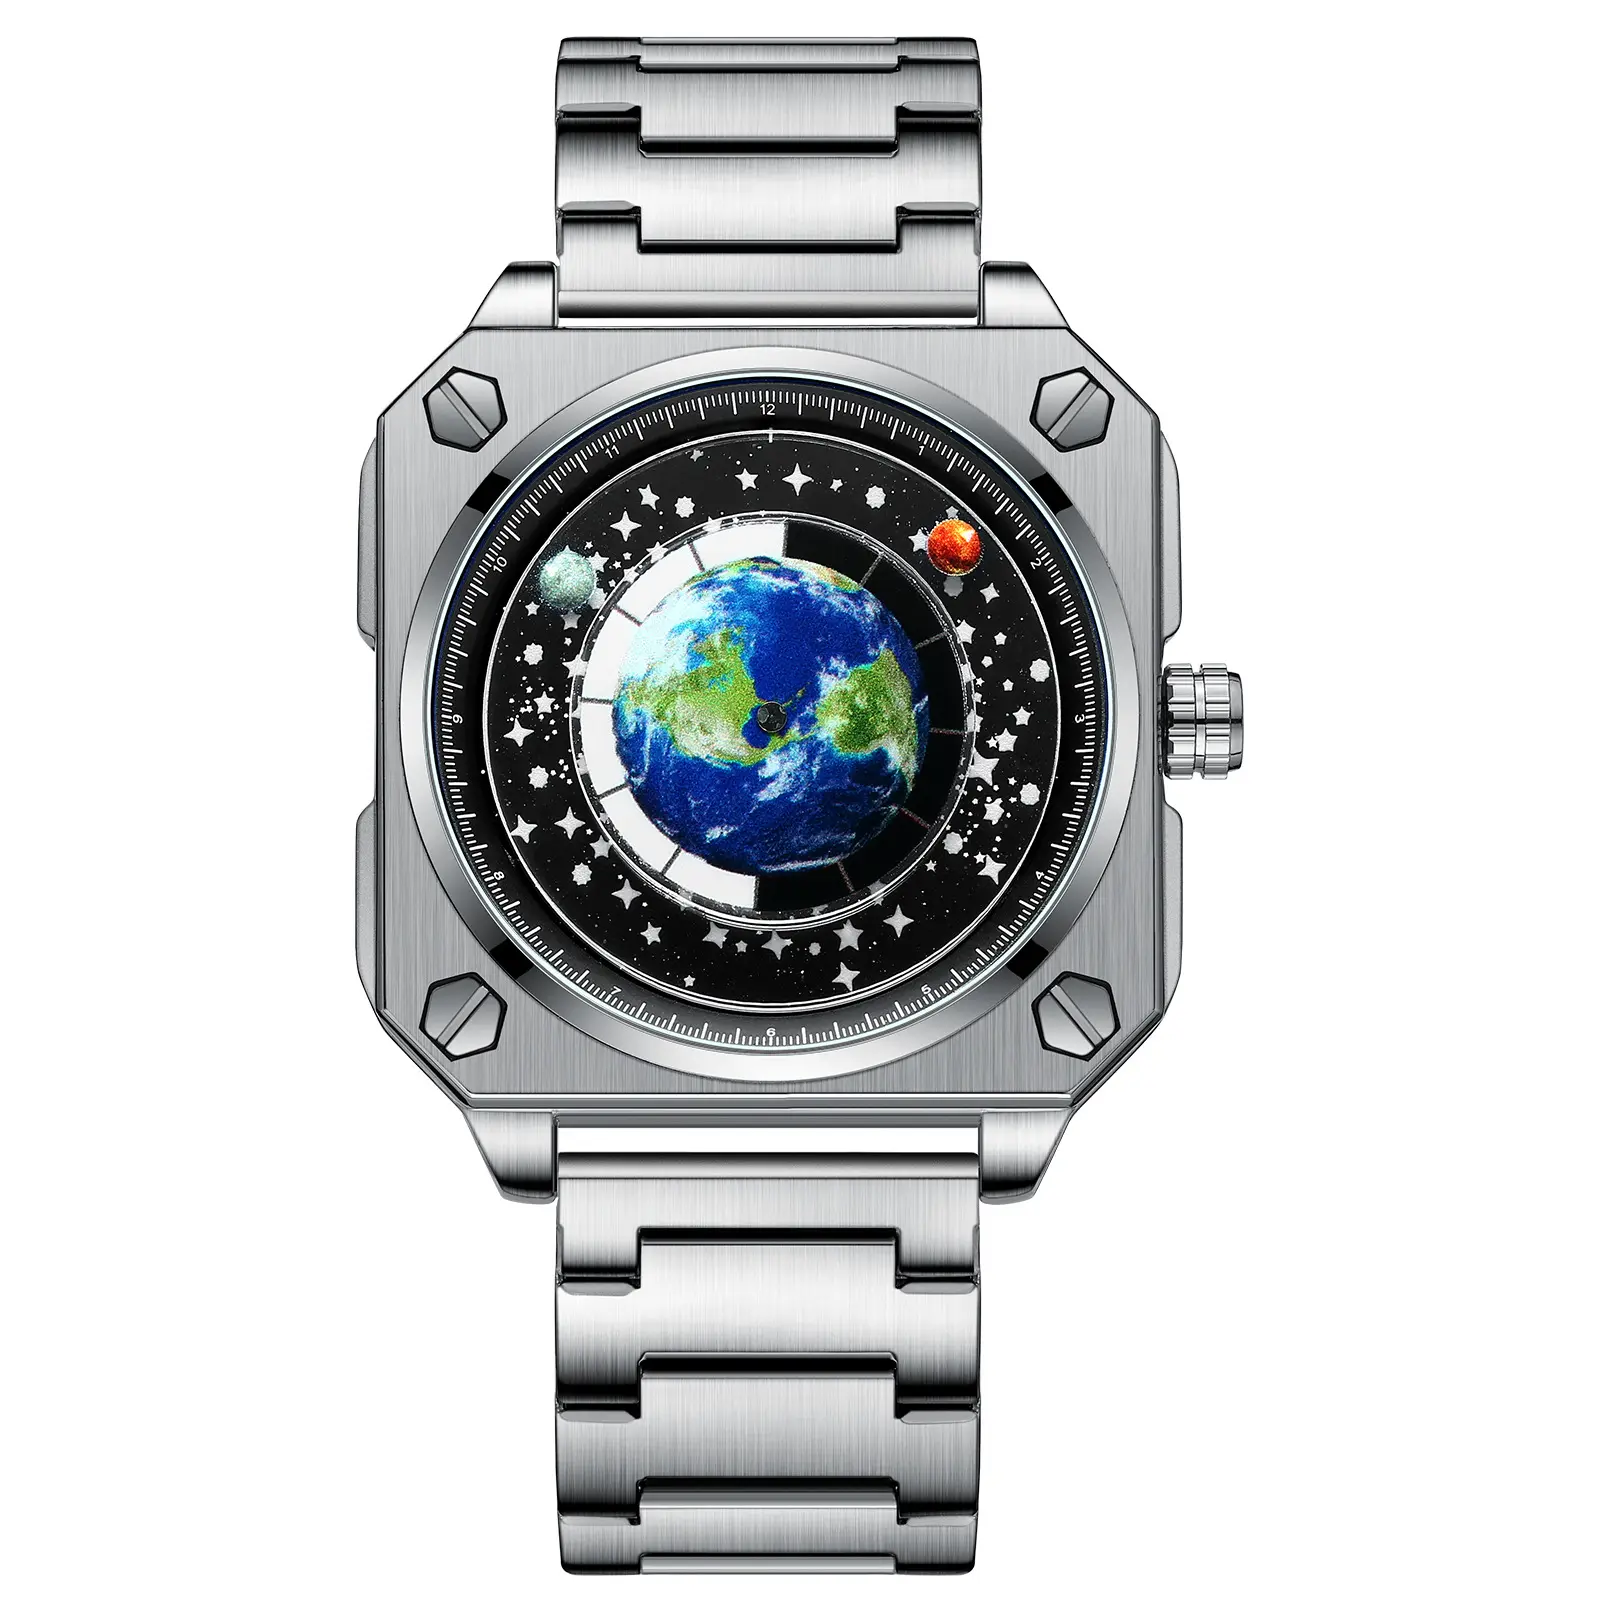 Nuovo concetto di stile uomo al quarzo orologio BINBOND S700 a prova di acqua orologi da uomo senza aghi oggetto di terra orologio da polso